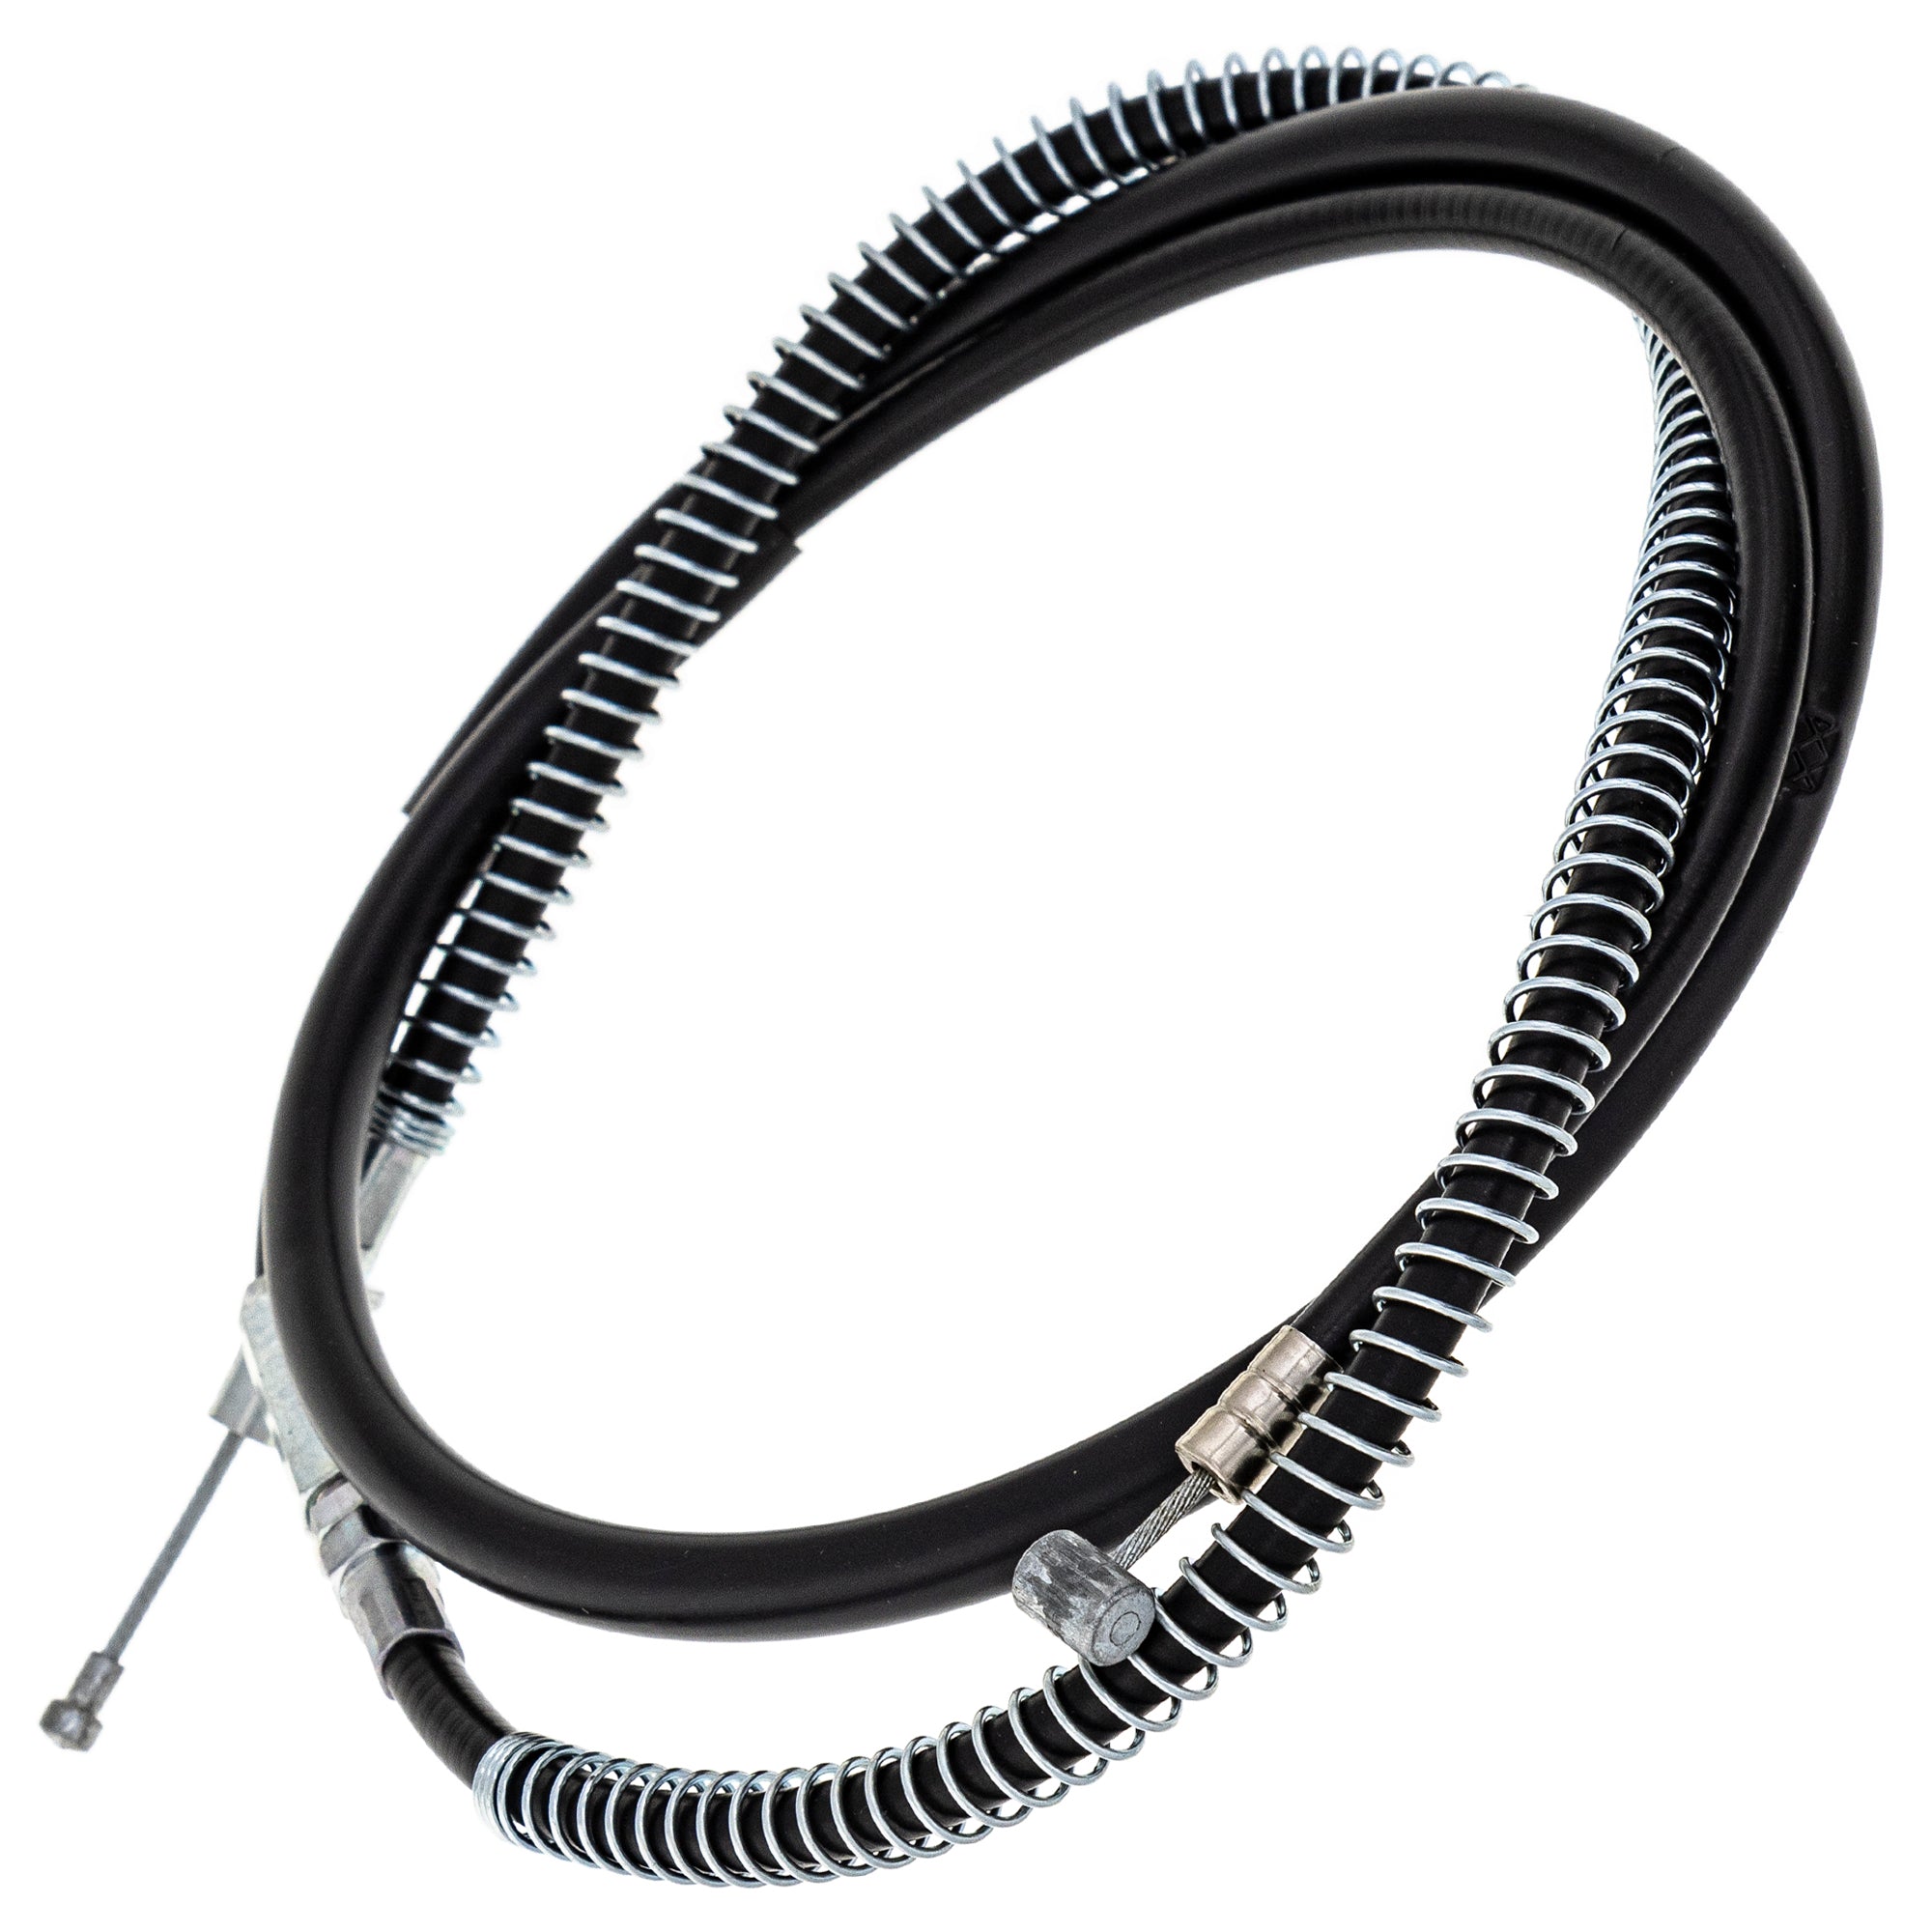 Clutch Cable for Kawasaki KZ750B 750 LTD CSR KZ750N 54011-1119